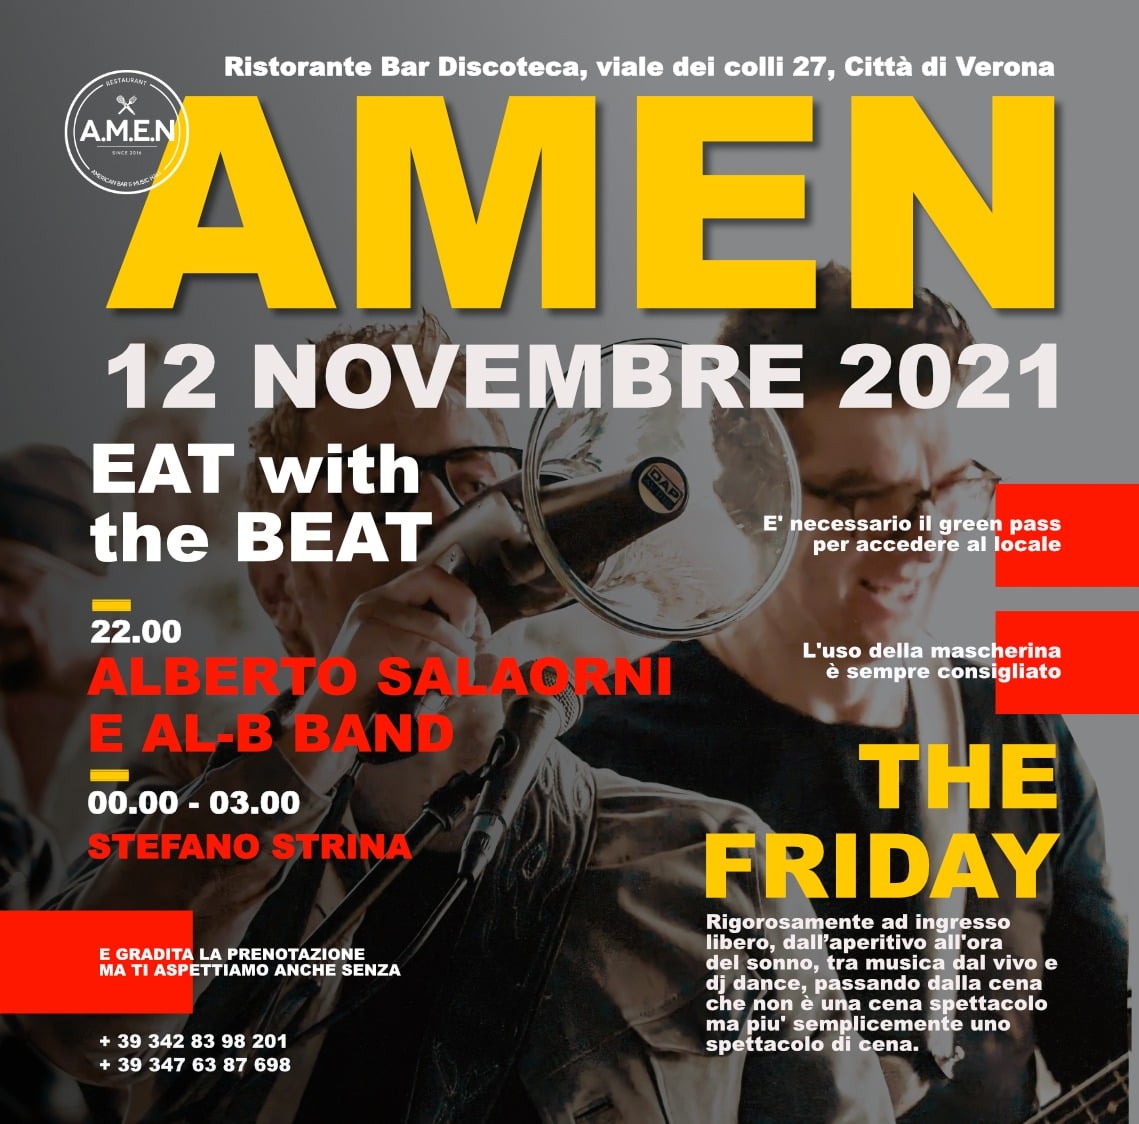  Alberto Salaorni & AL-B.Band all'Amen - Verona il 12 novembre '21